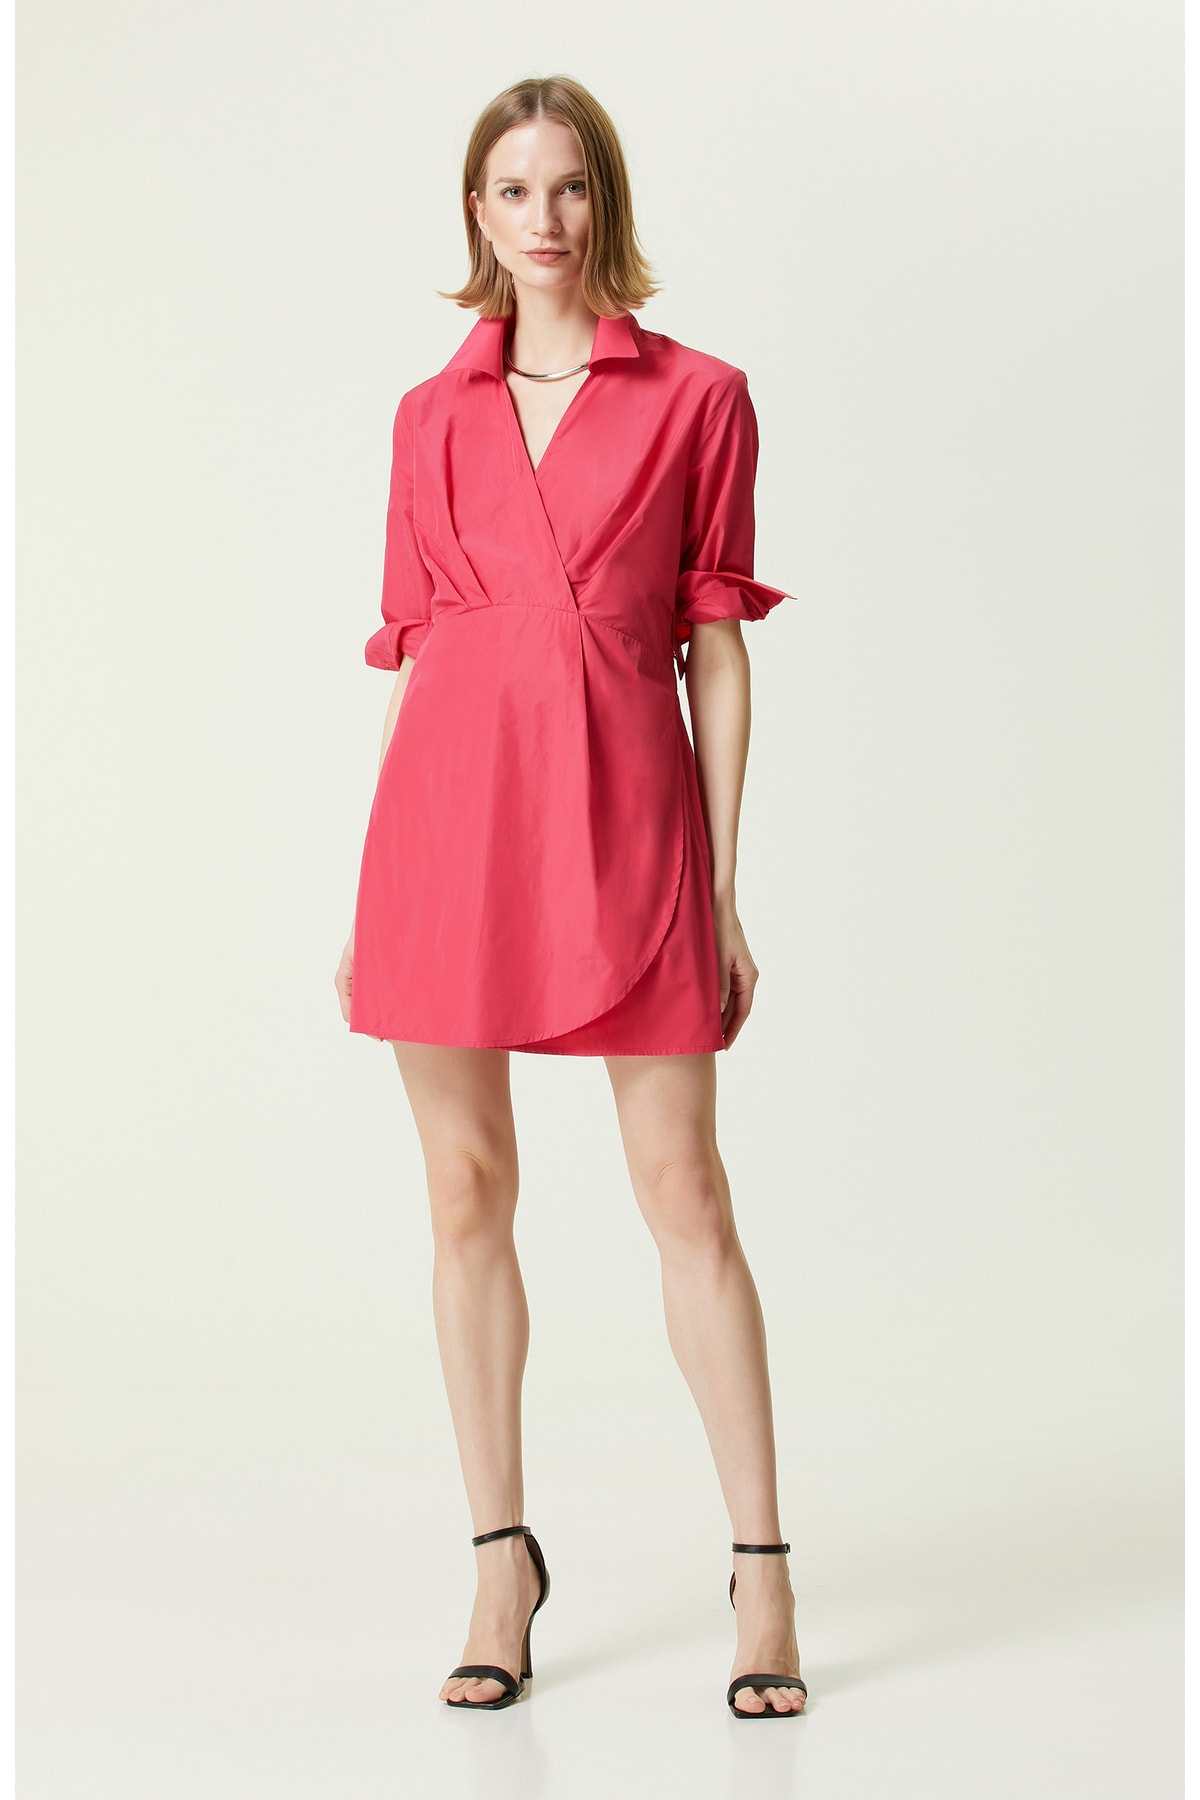 цена Платье с длинным рукавом и воротником-рубашкой цвета фуксии Network, розовый